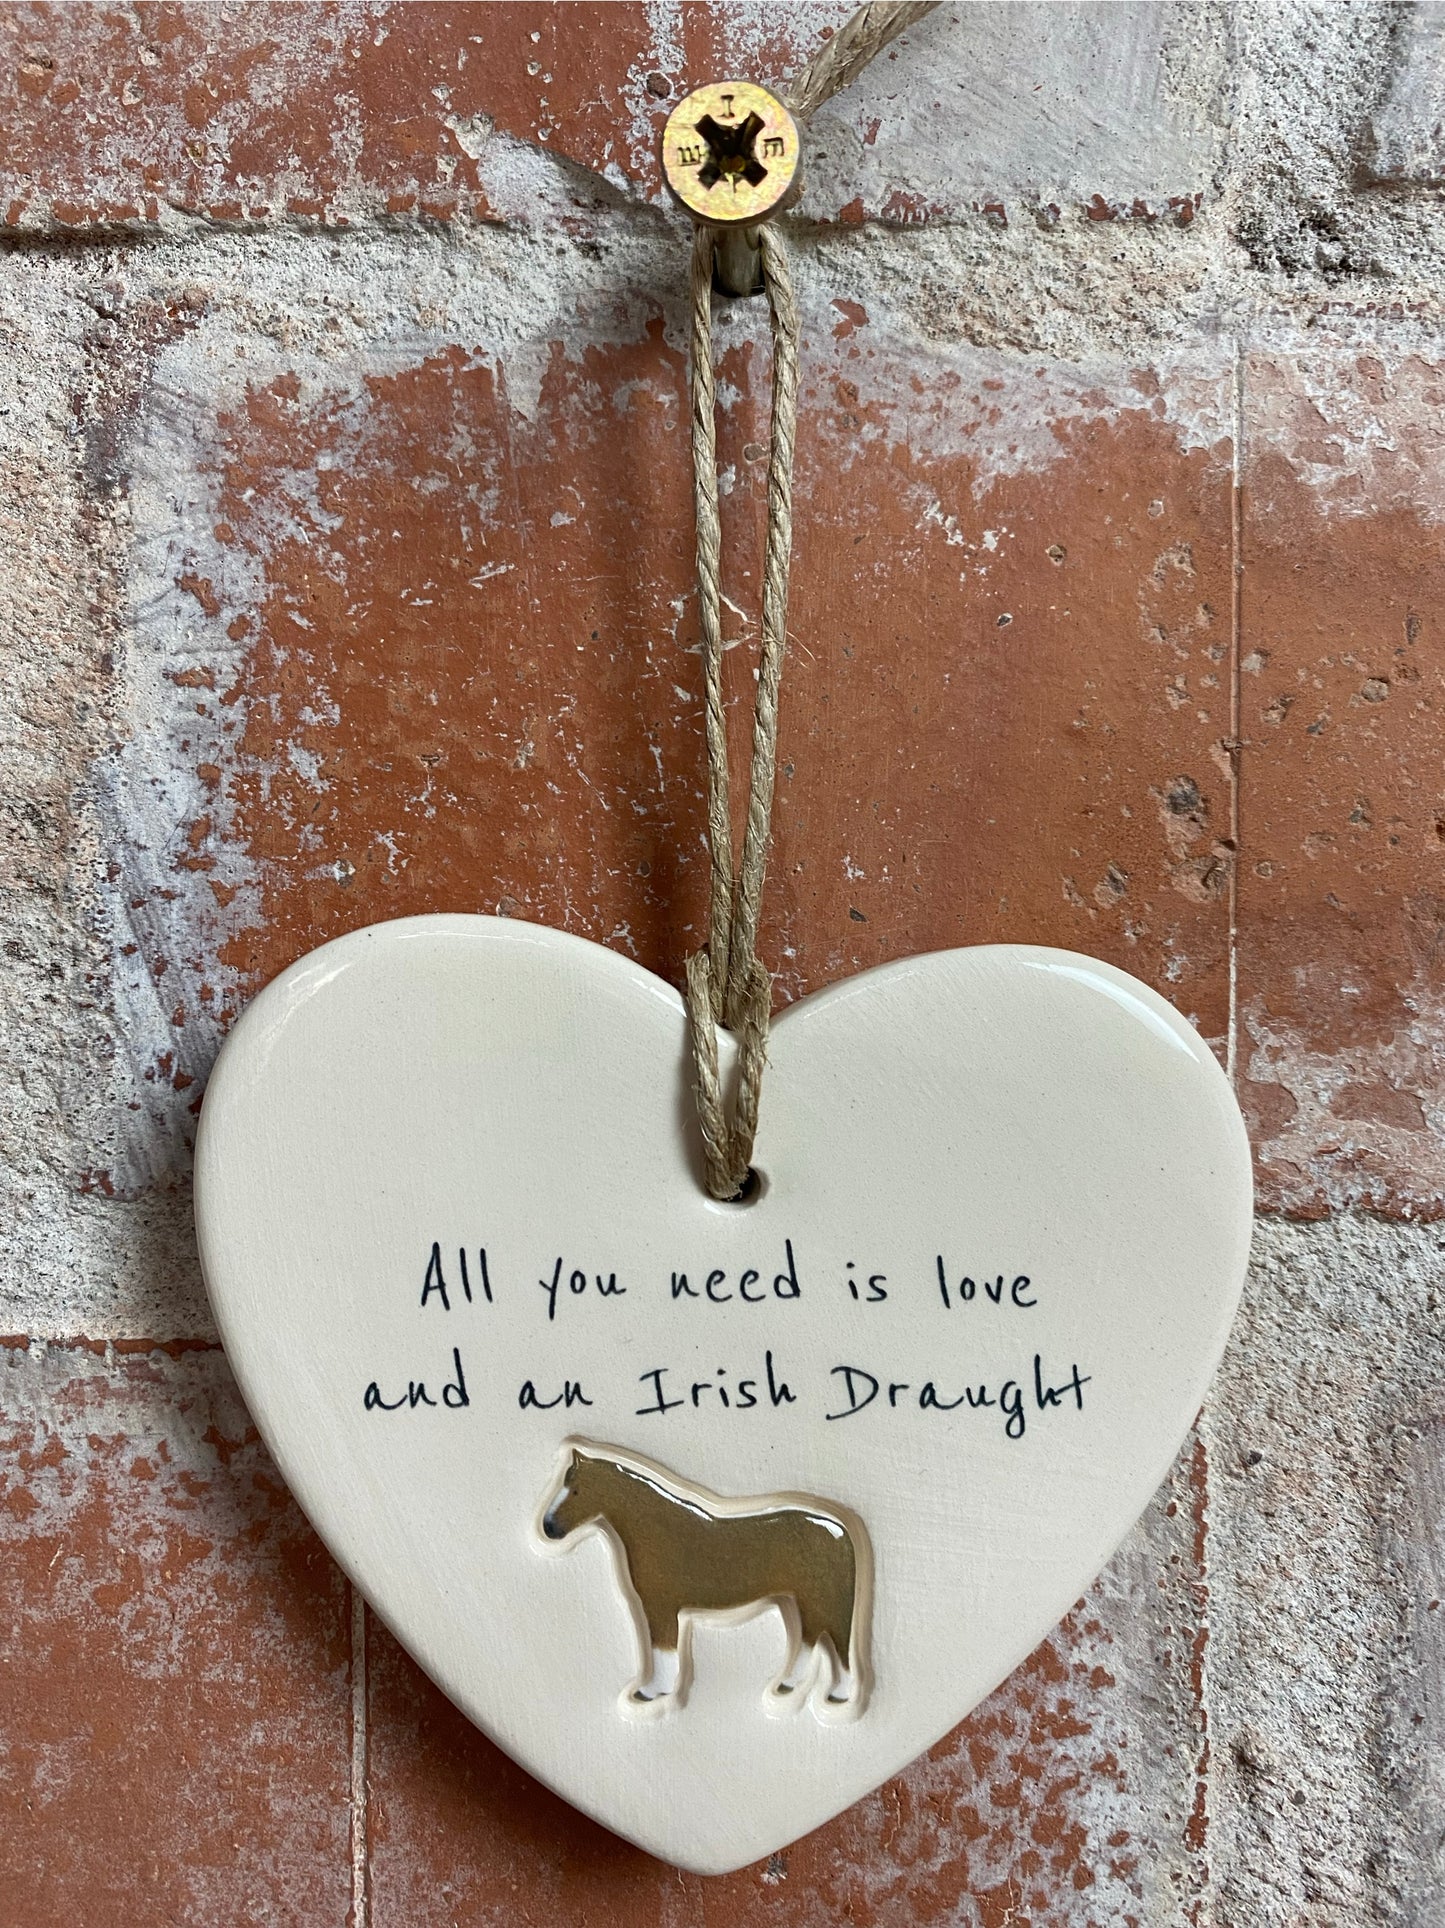 Irish Draught ceramic heart